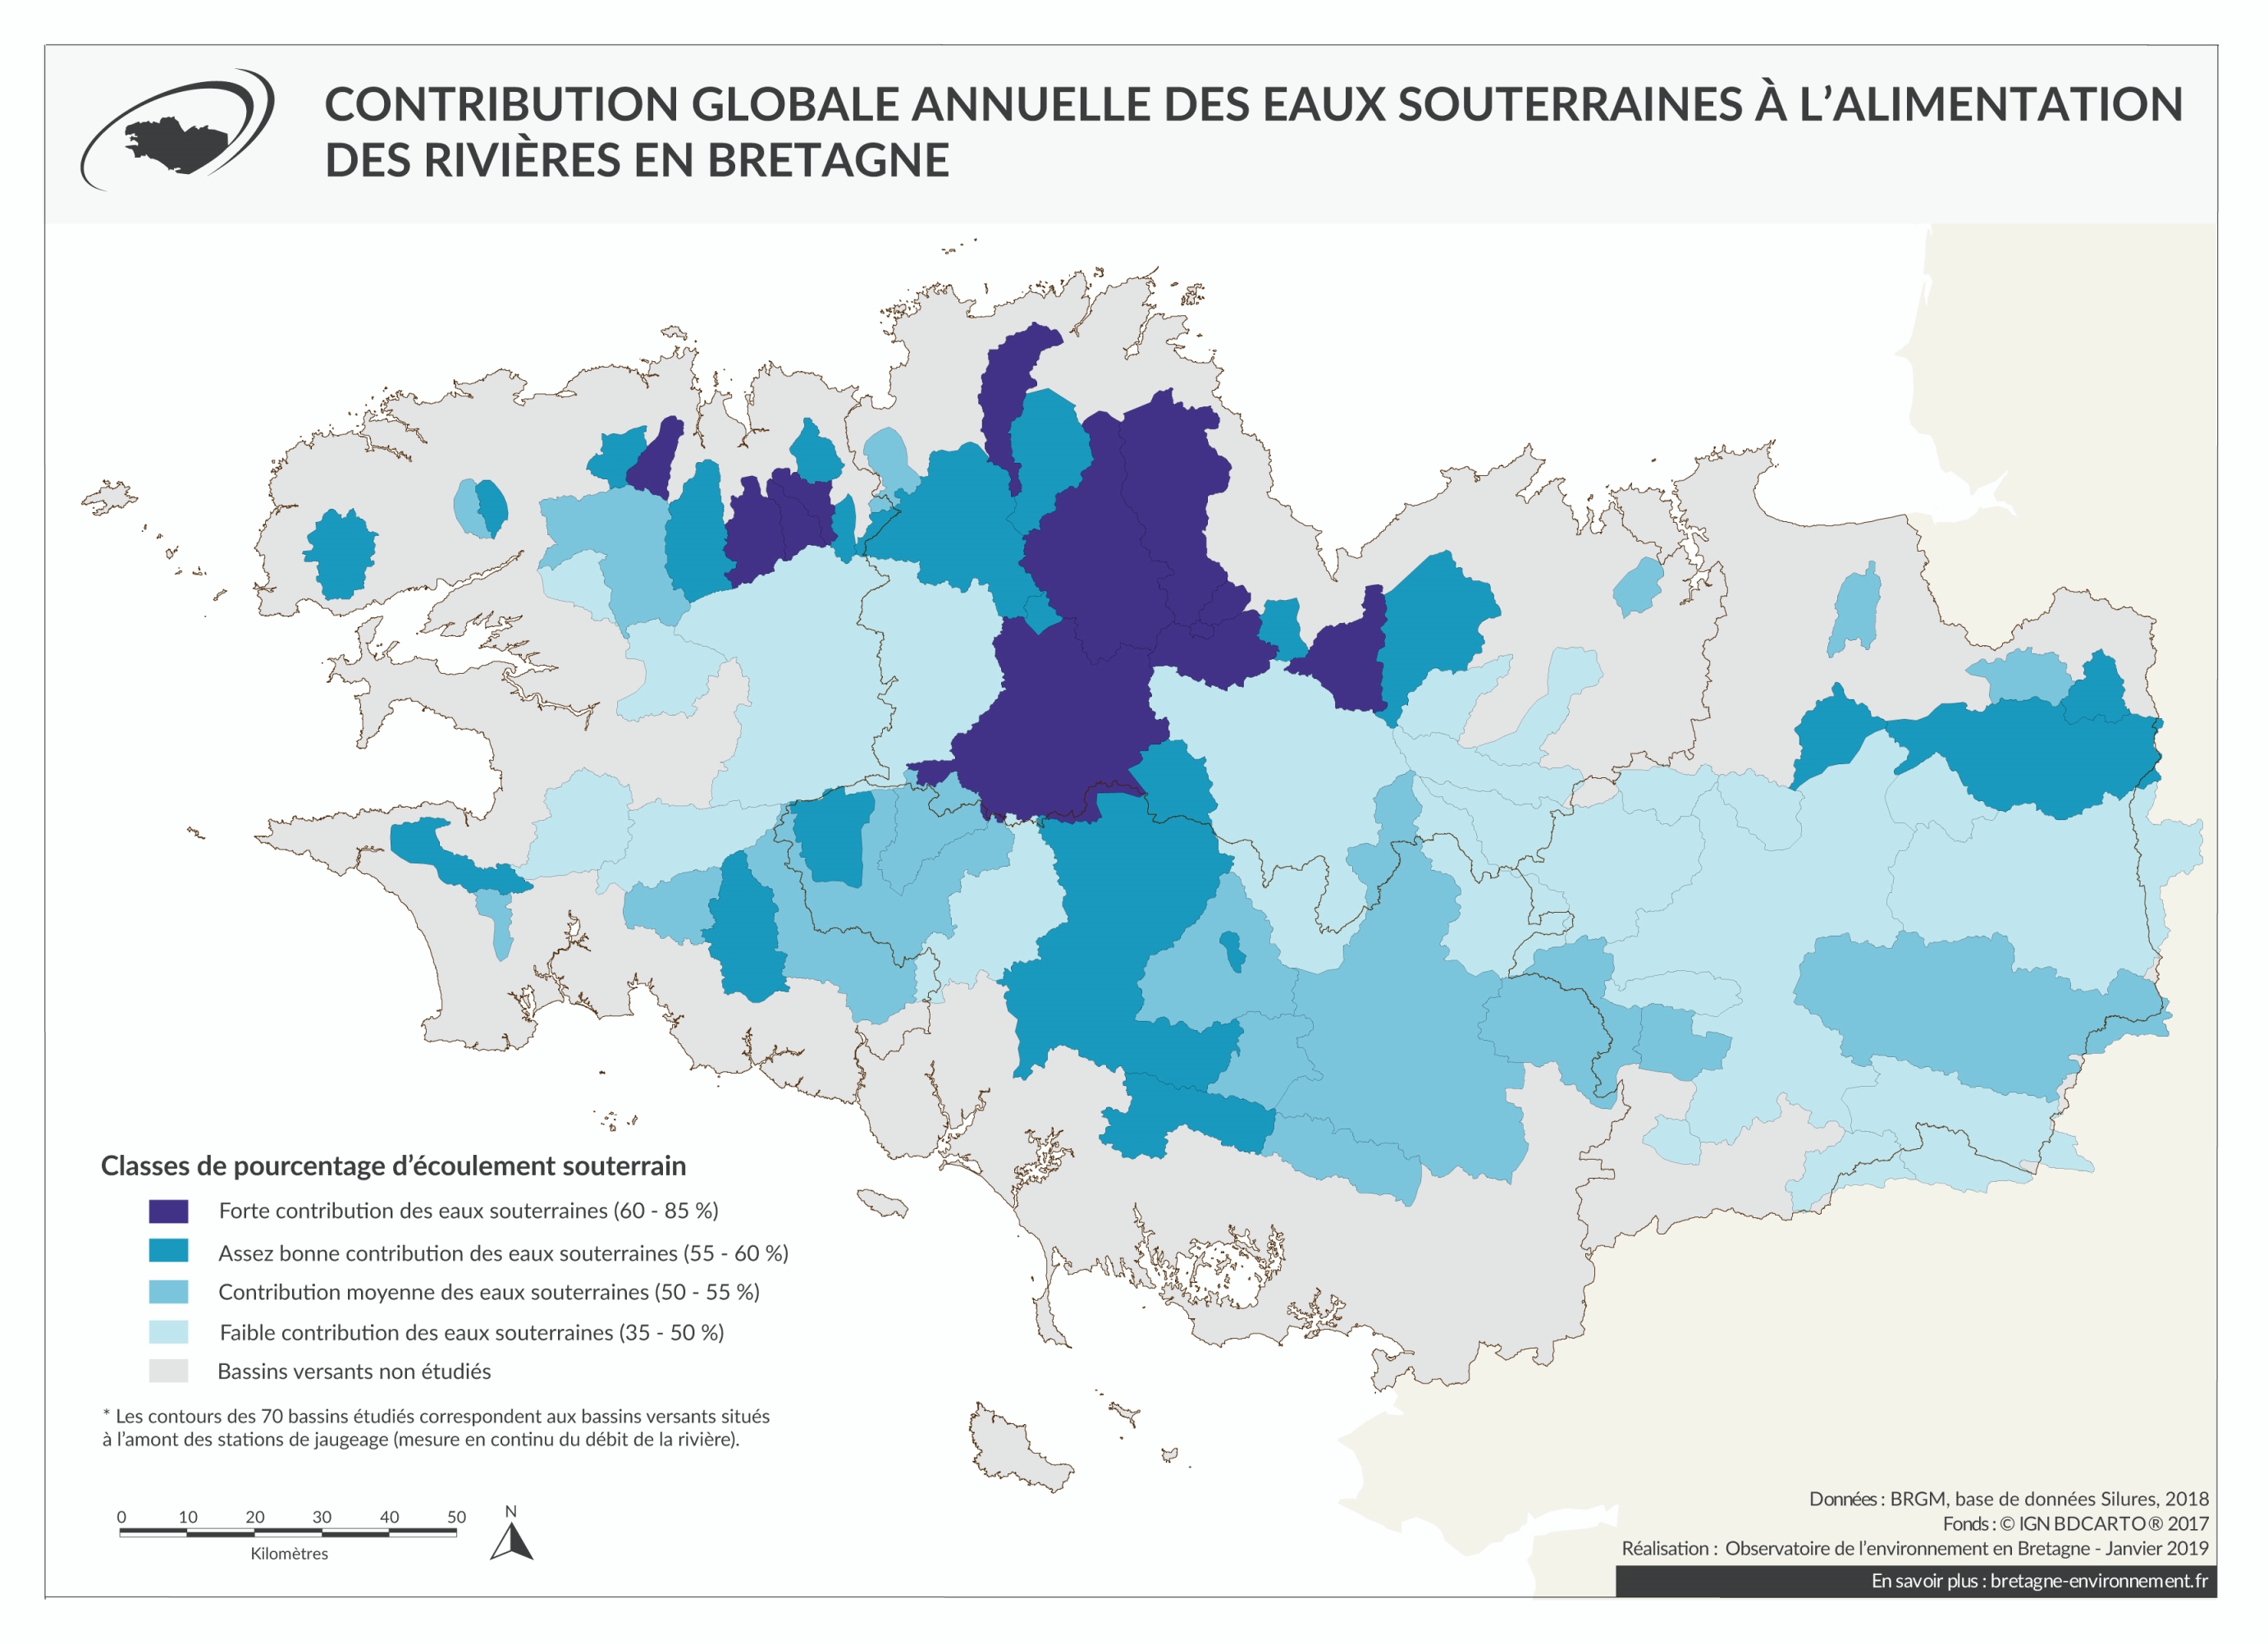 Contribution globale annuelle des eaux souterraines à l'alimentation des rivières bretonnes